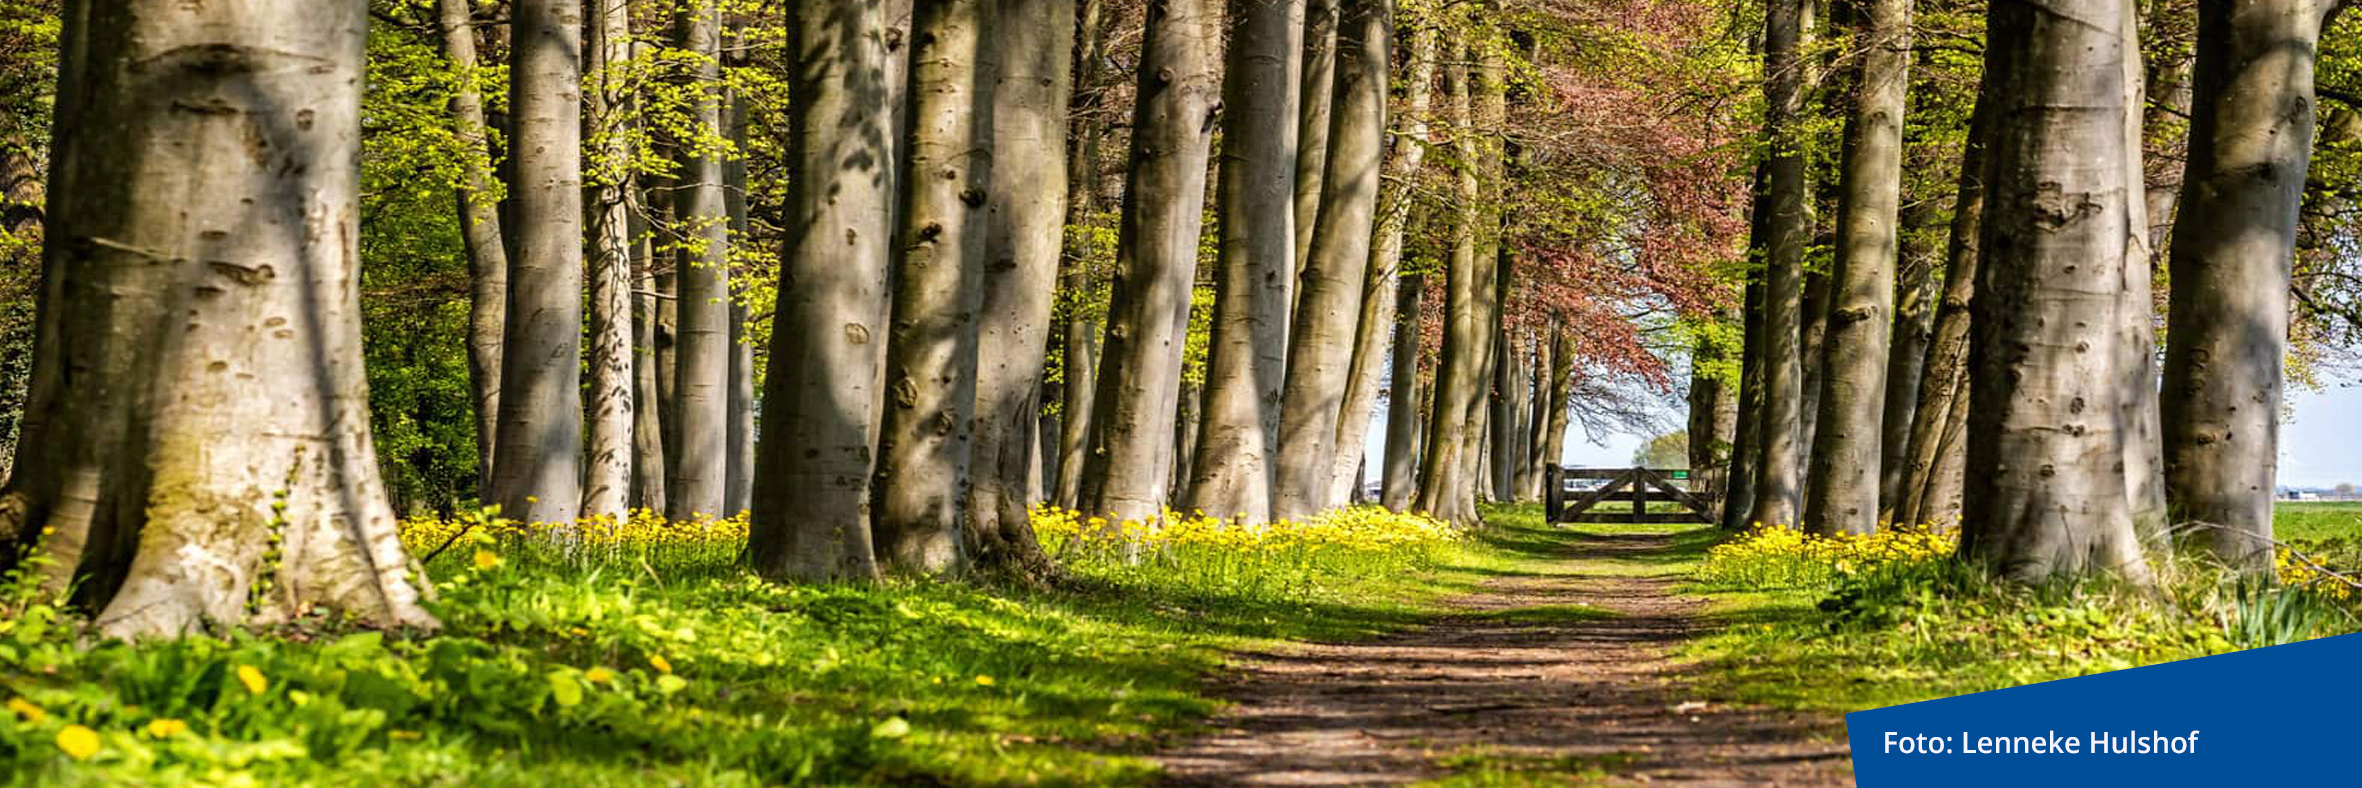 Een pad dat slingert door een bos met bomen en gras. Natuurlijke schoonheid en rustige omgeving.